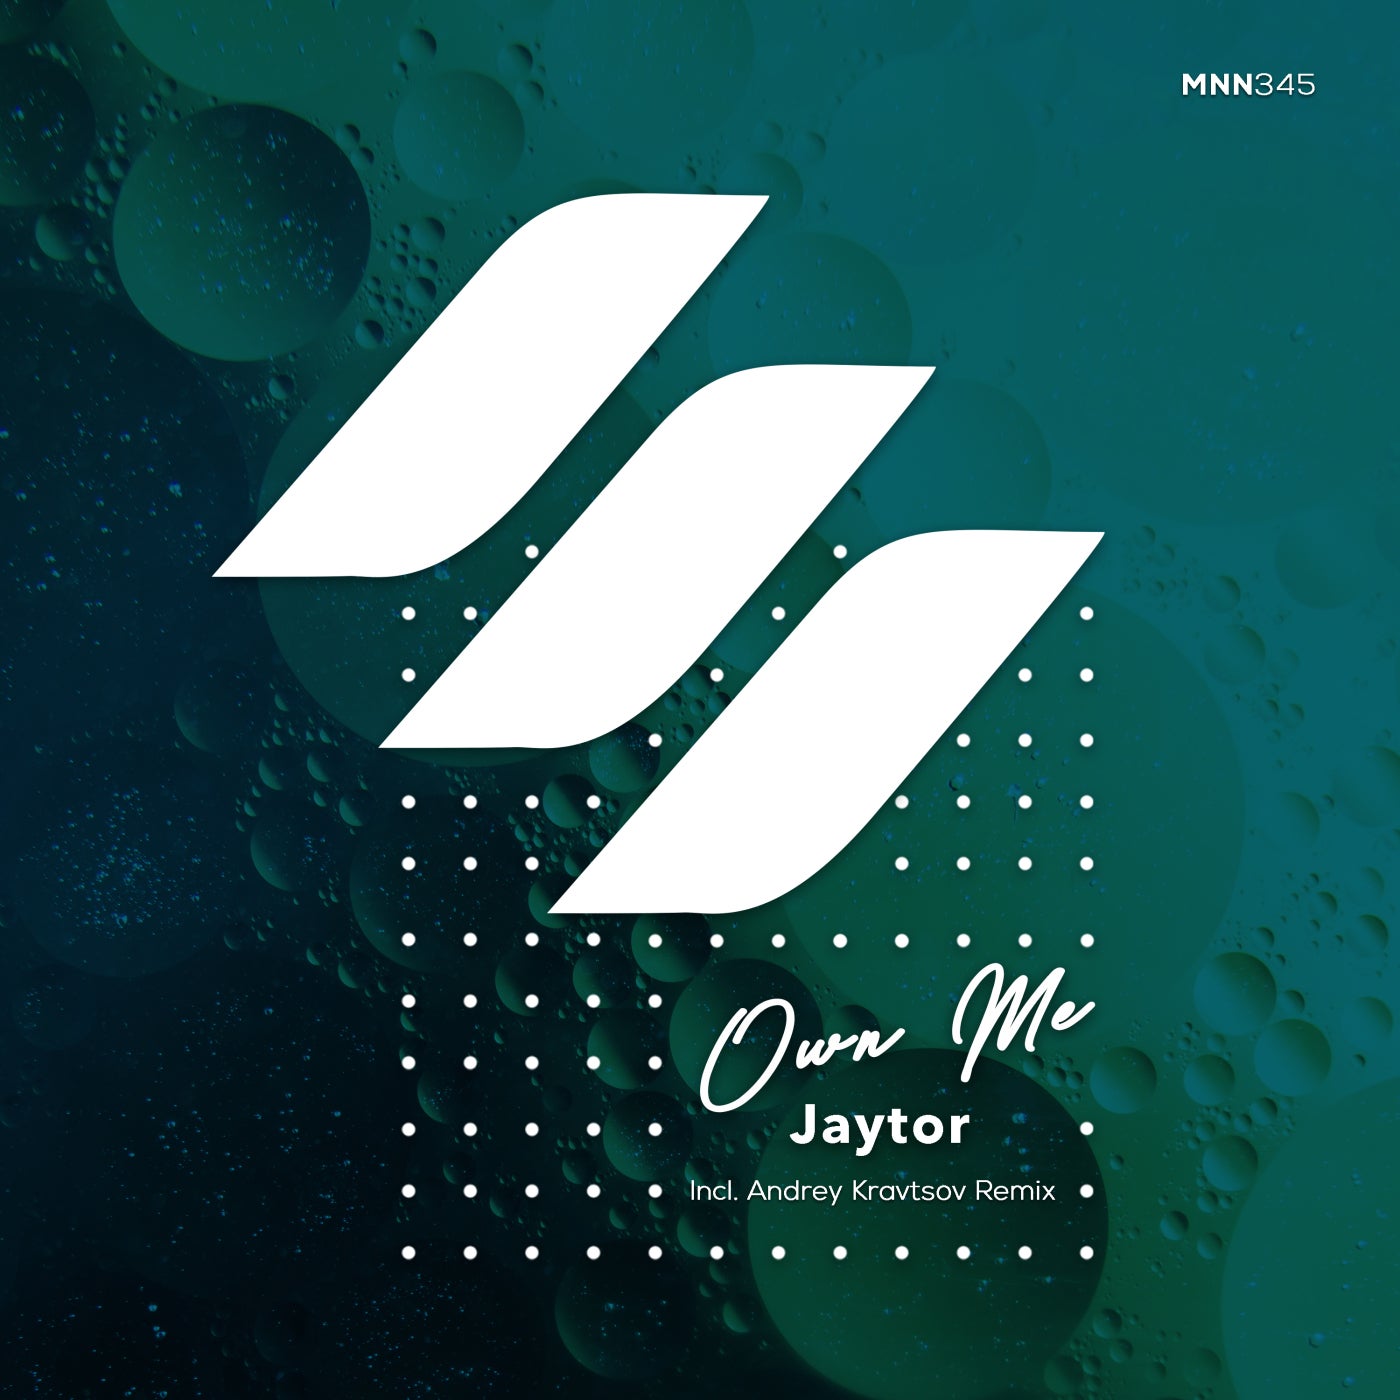 Jaytor - Own Me (andrey Kravtsov Remix) on Revolution Radio